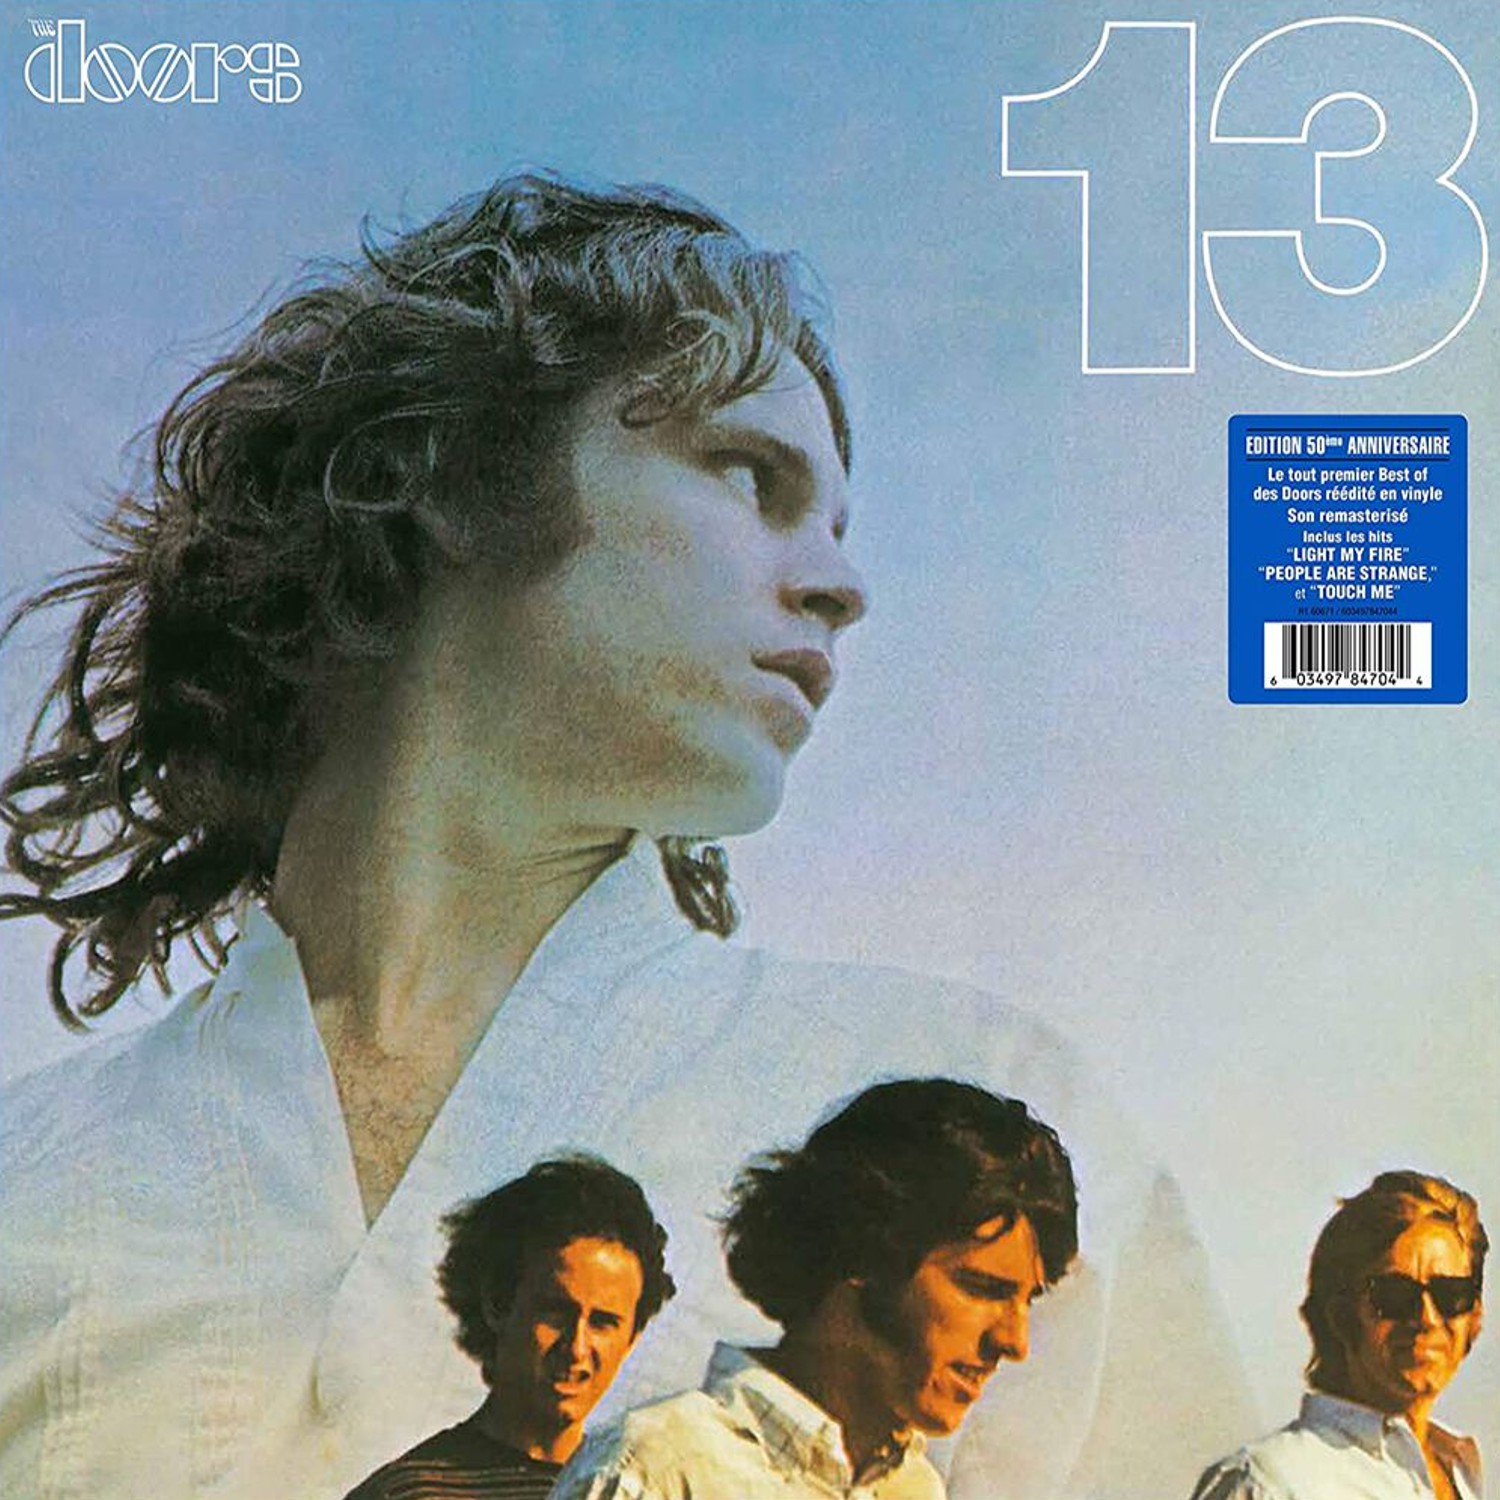 Read more about the article Godišnjica objavljivanja kompilacijskog albuma 13 američkog rock-sastava The Doors